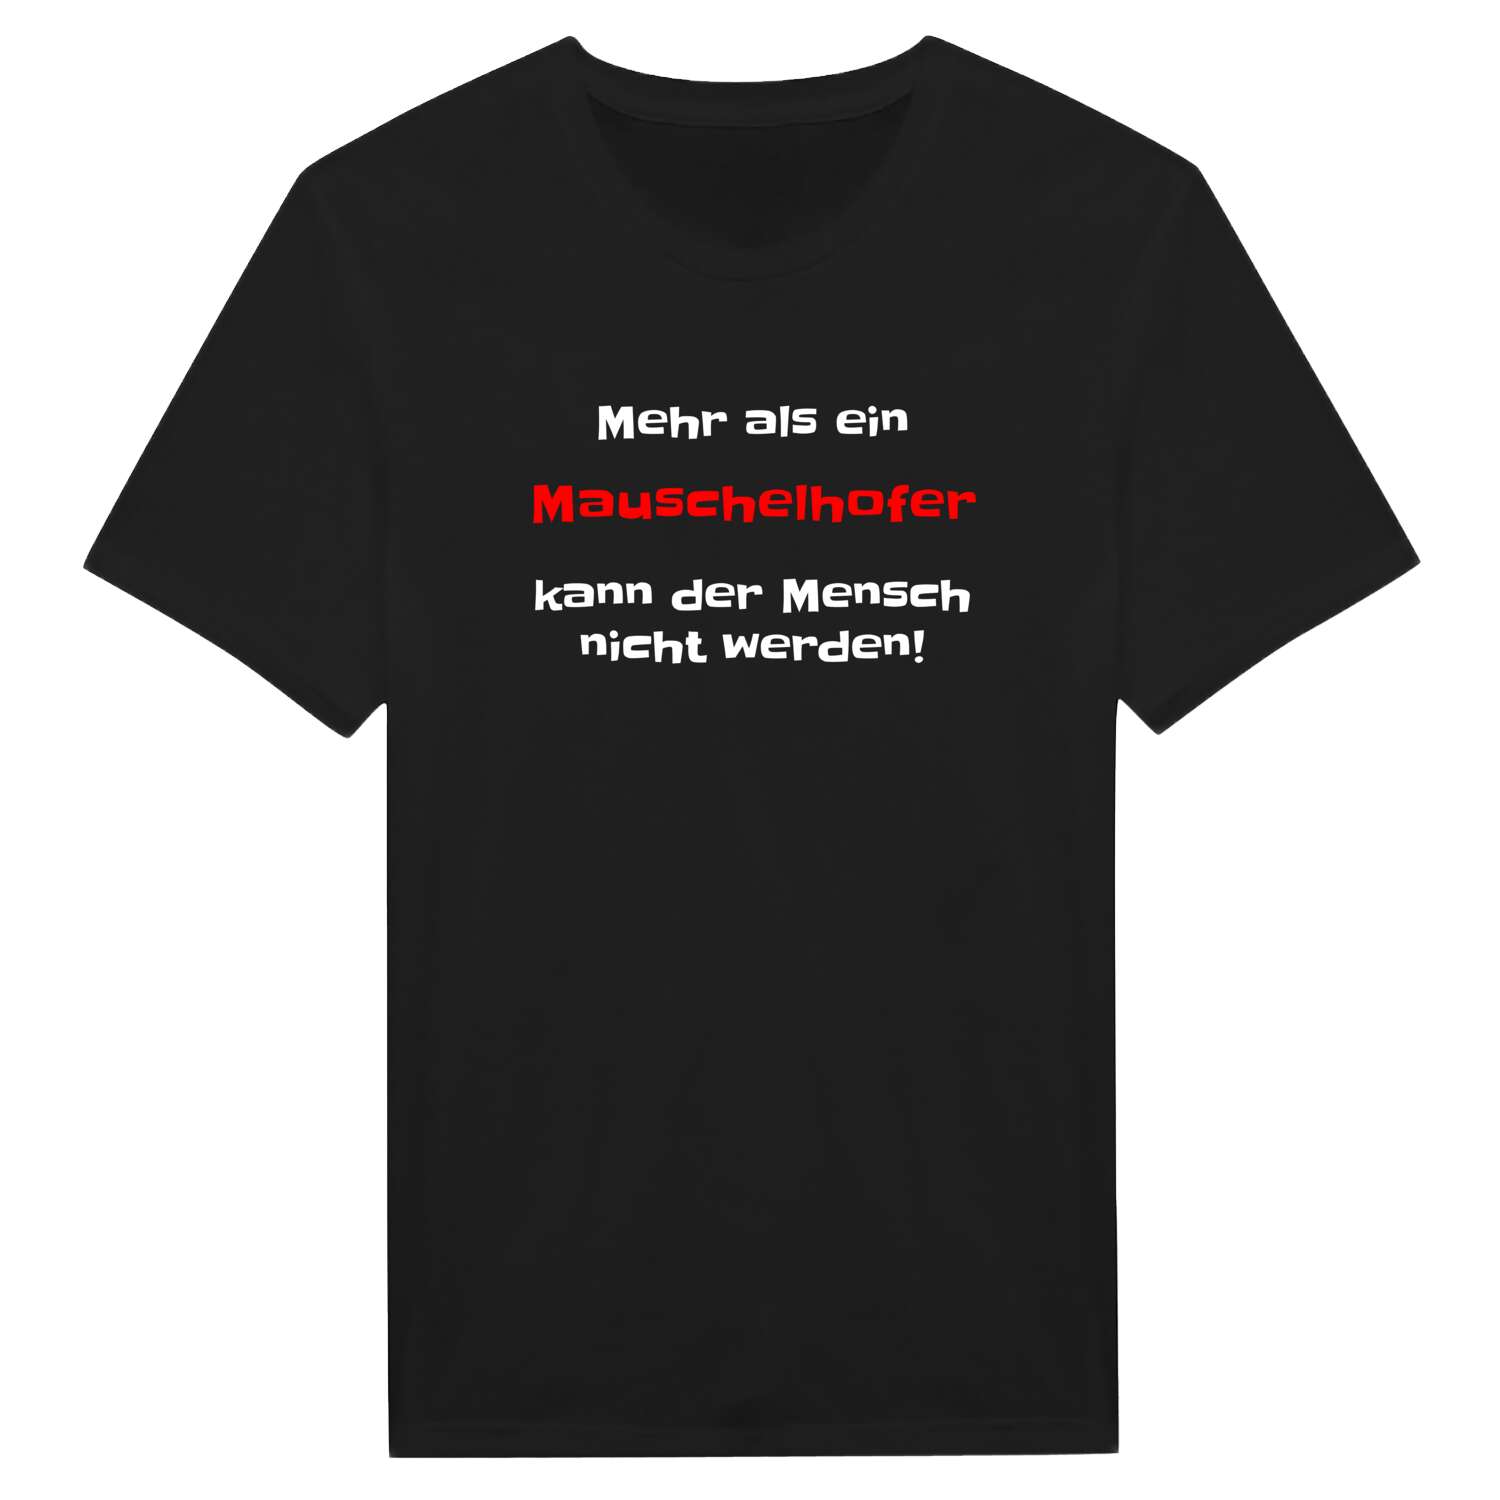 Mauschelhof T-Shirt »Mehr als ein«